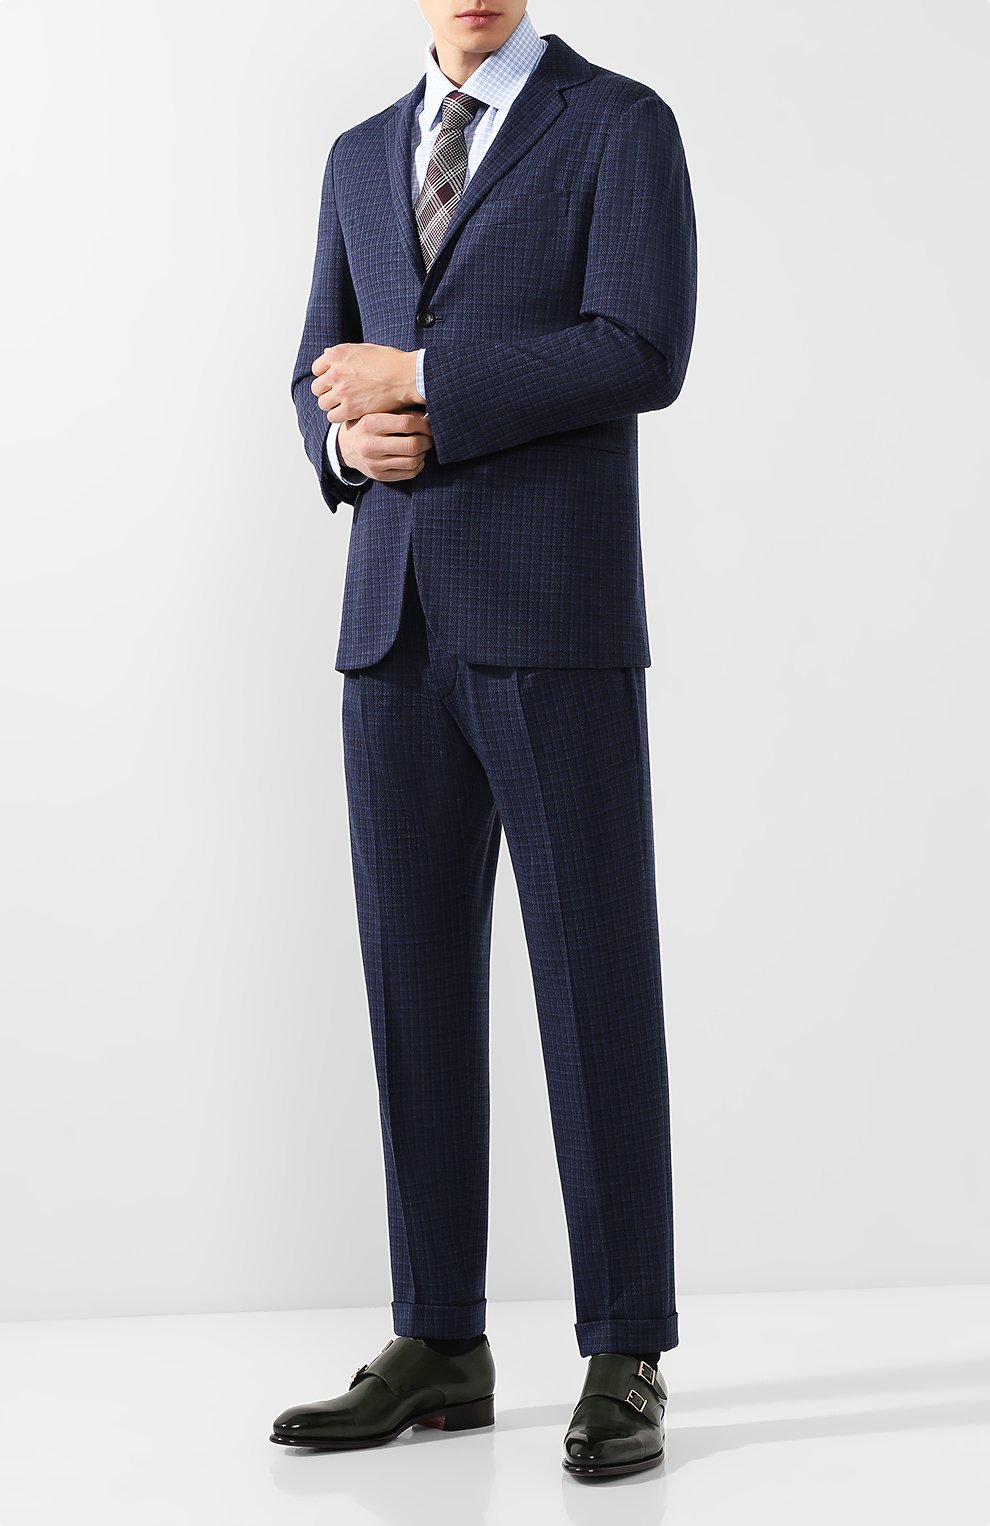 Костюмы KNT, Шерстяной костюм с пиджаком на двух пуговицах KNT, Италия, Синий, Шерсть: 91%; Полиэстер: 9%;, 6815717  - купить